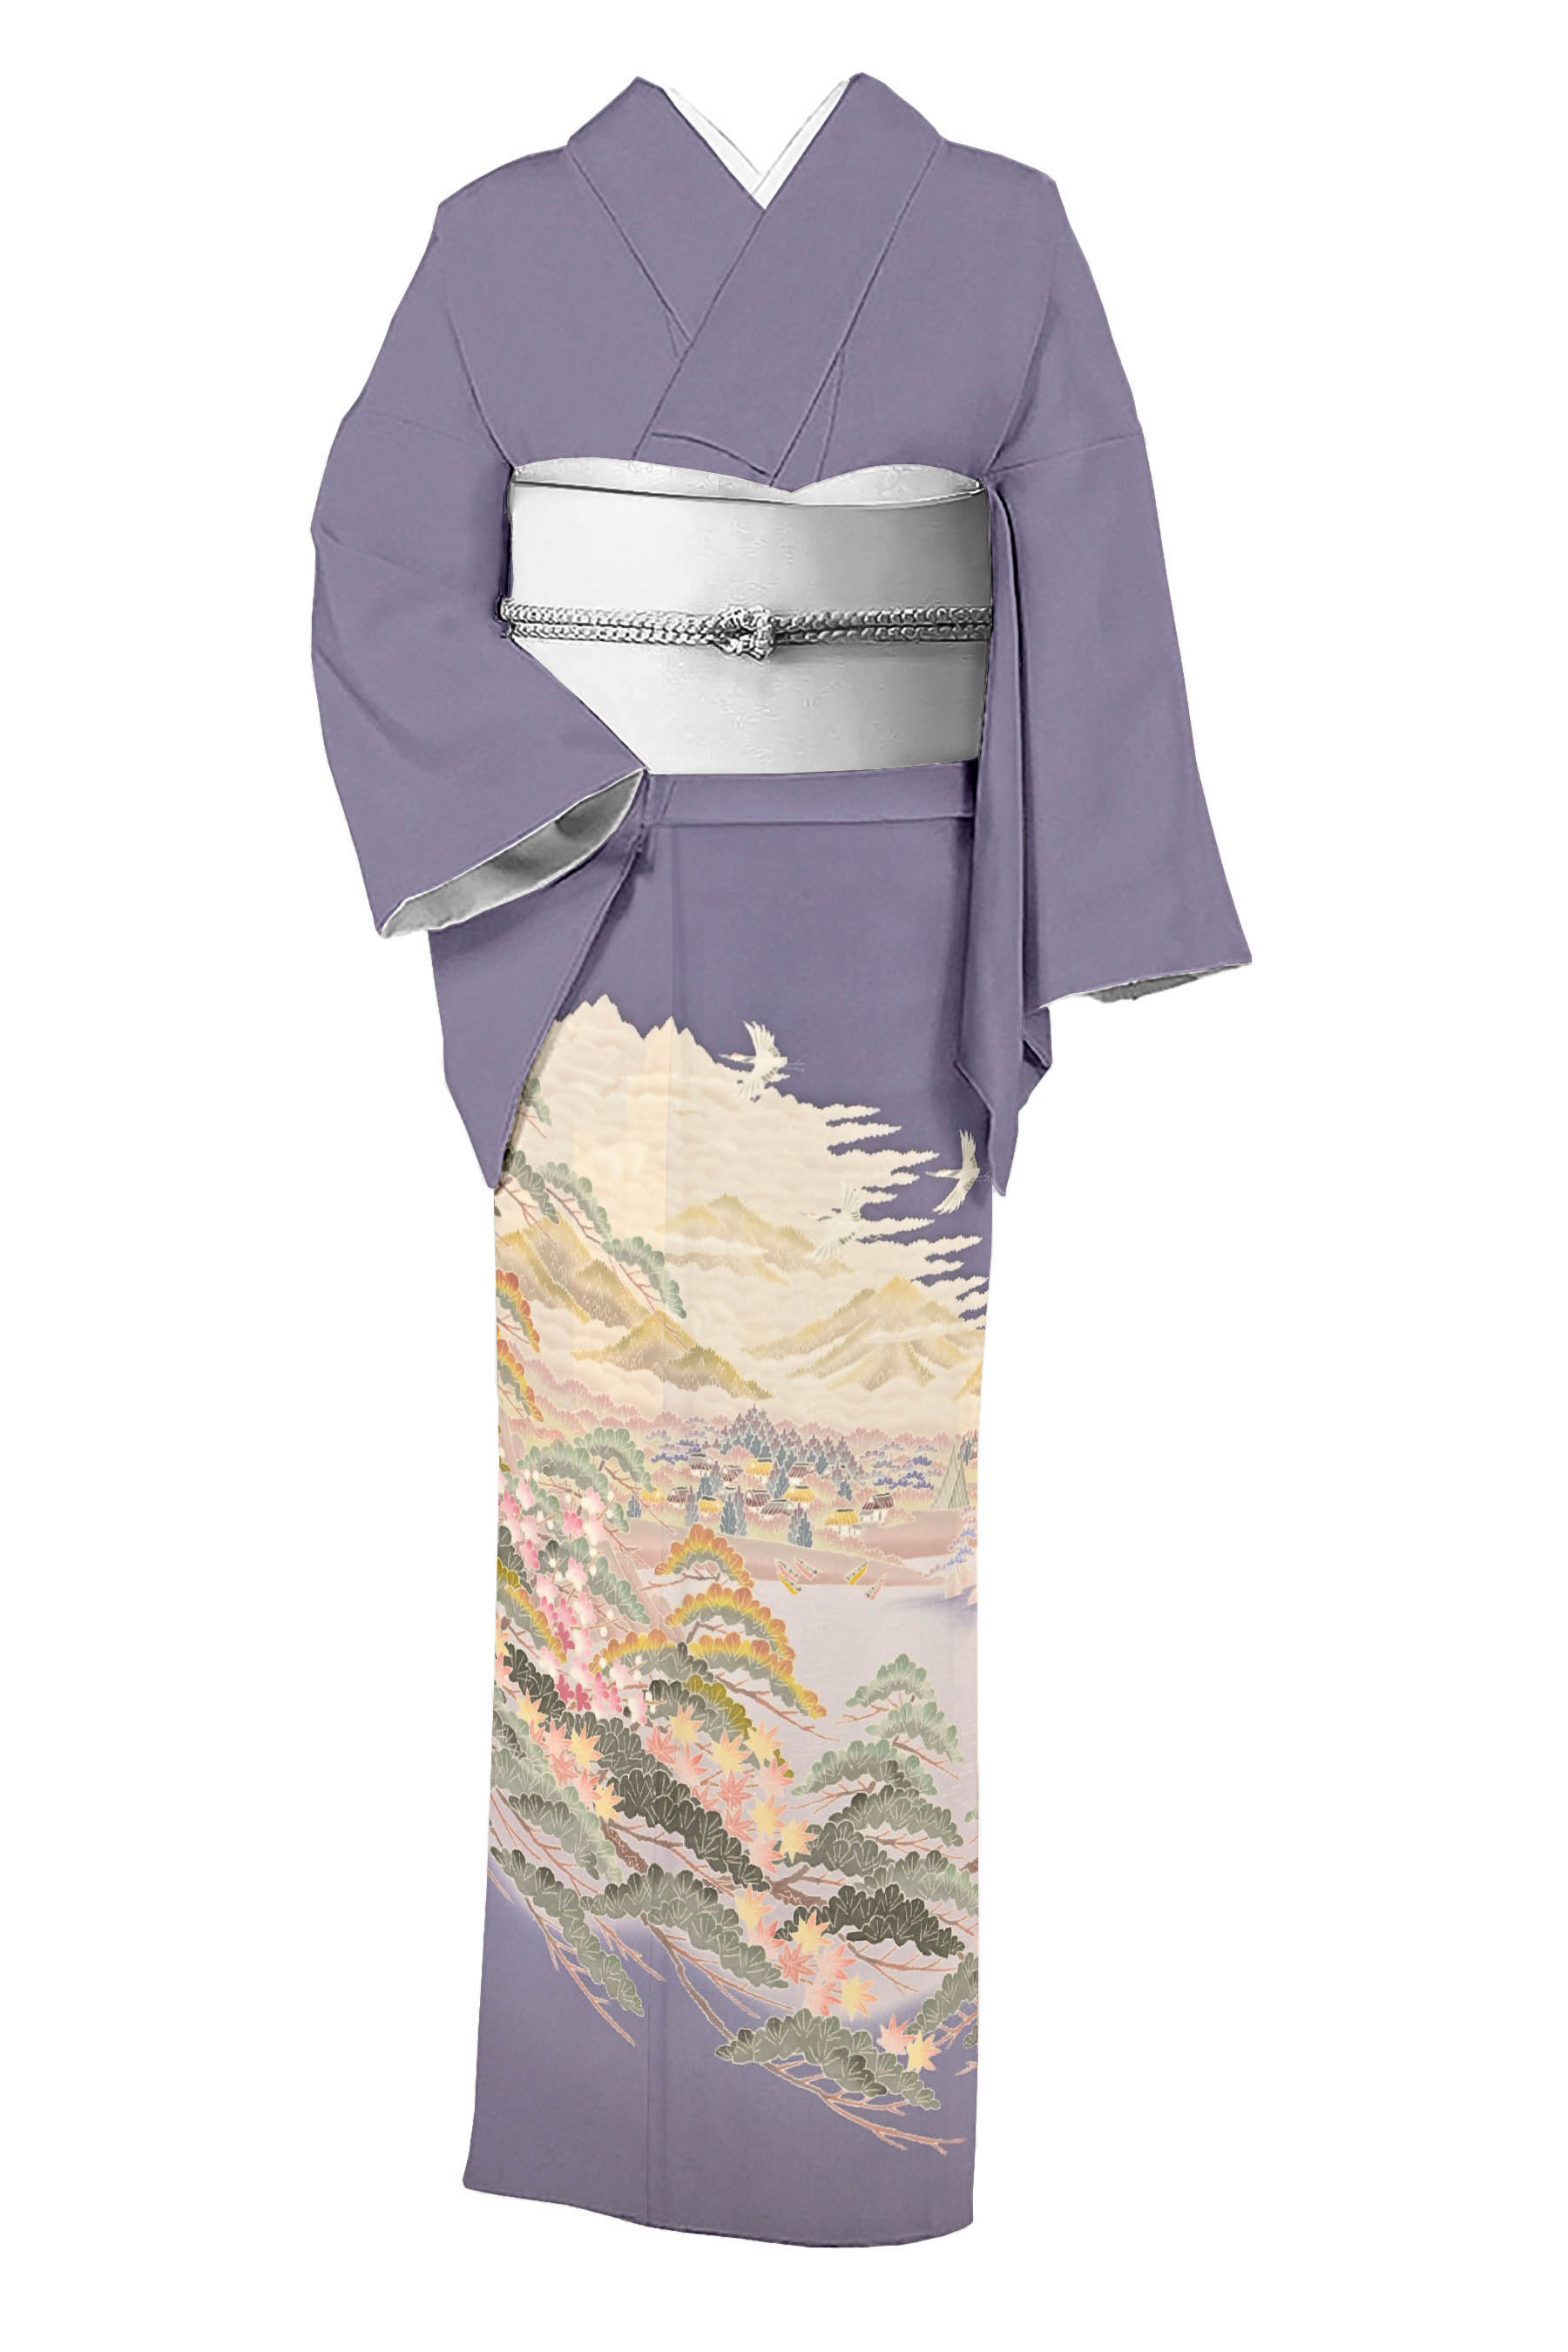 マリナボーダー 作家もの 薄紫地の加賀友禅の色留袖 着物